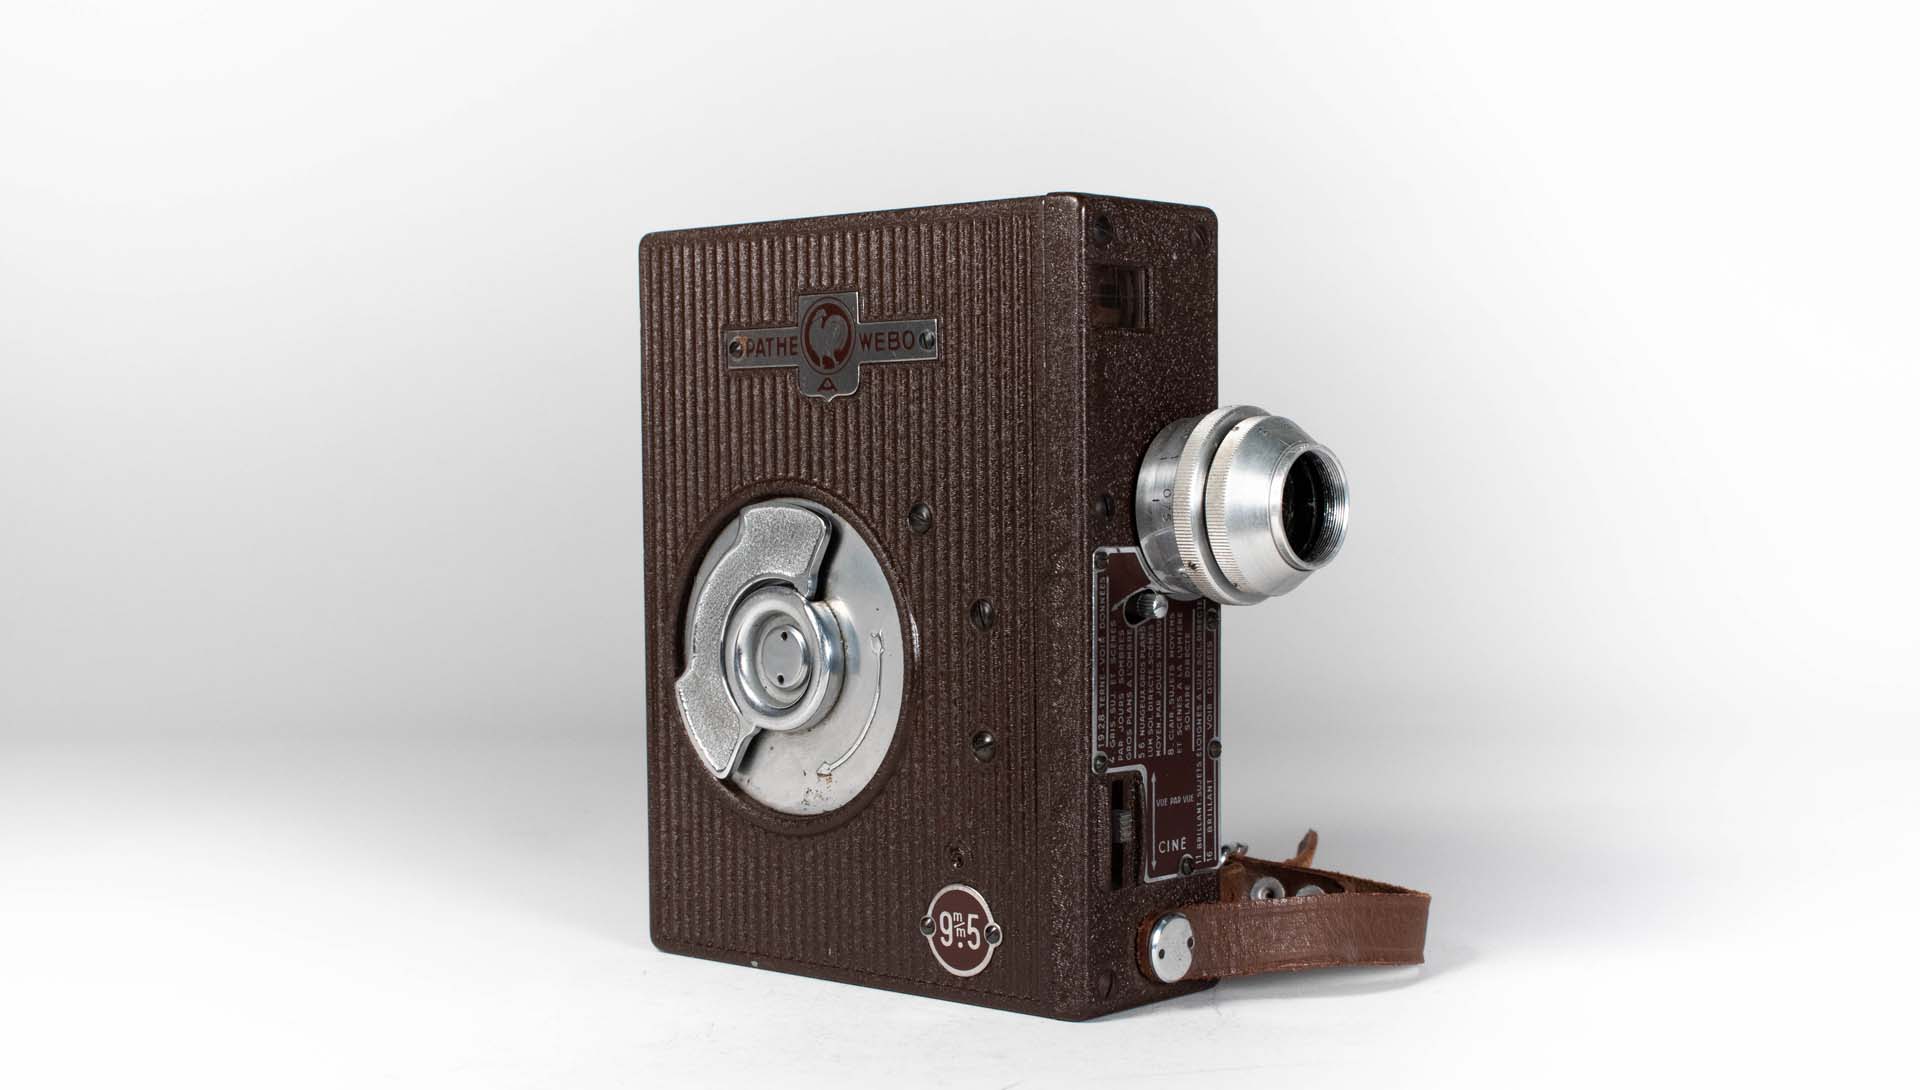 Caméra Pathé WeboA 9.5 mm - Déposant Jean-Claude Marcelli - Fabriquée en 194